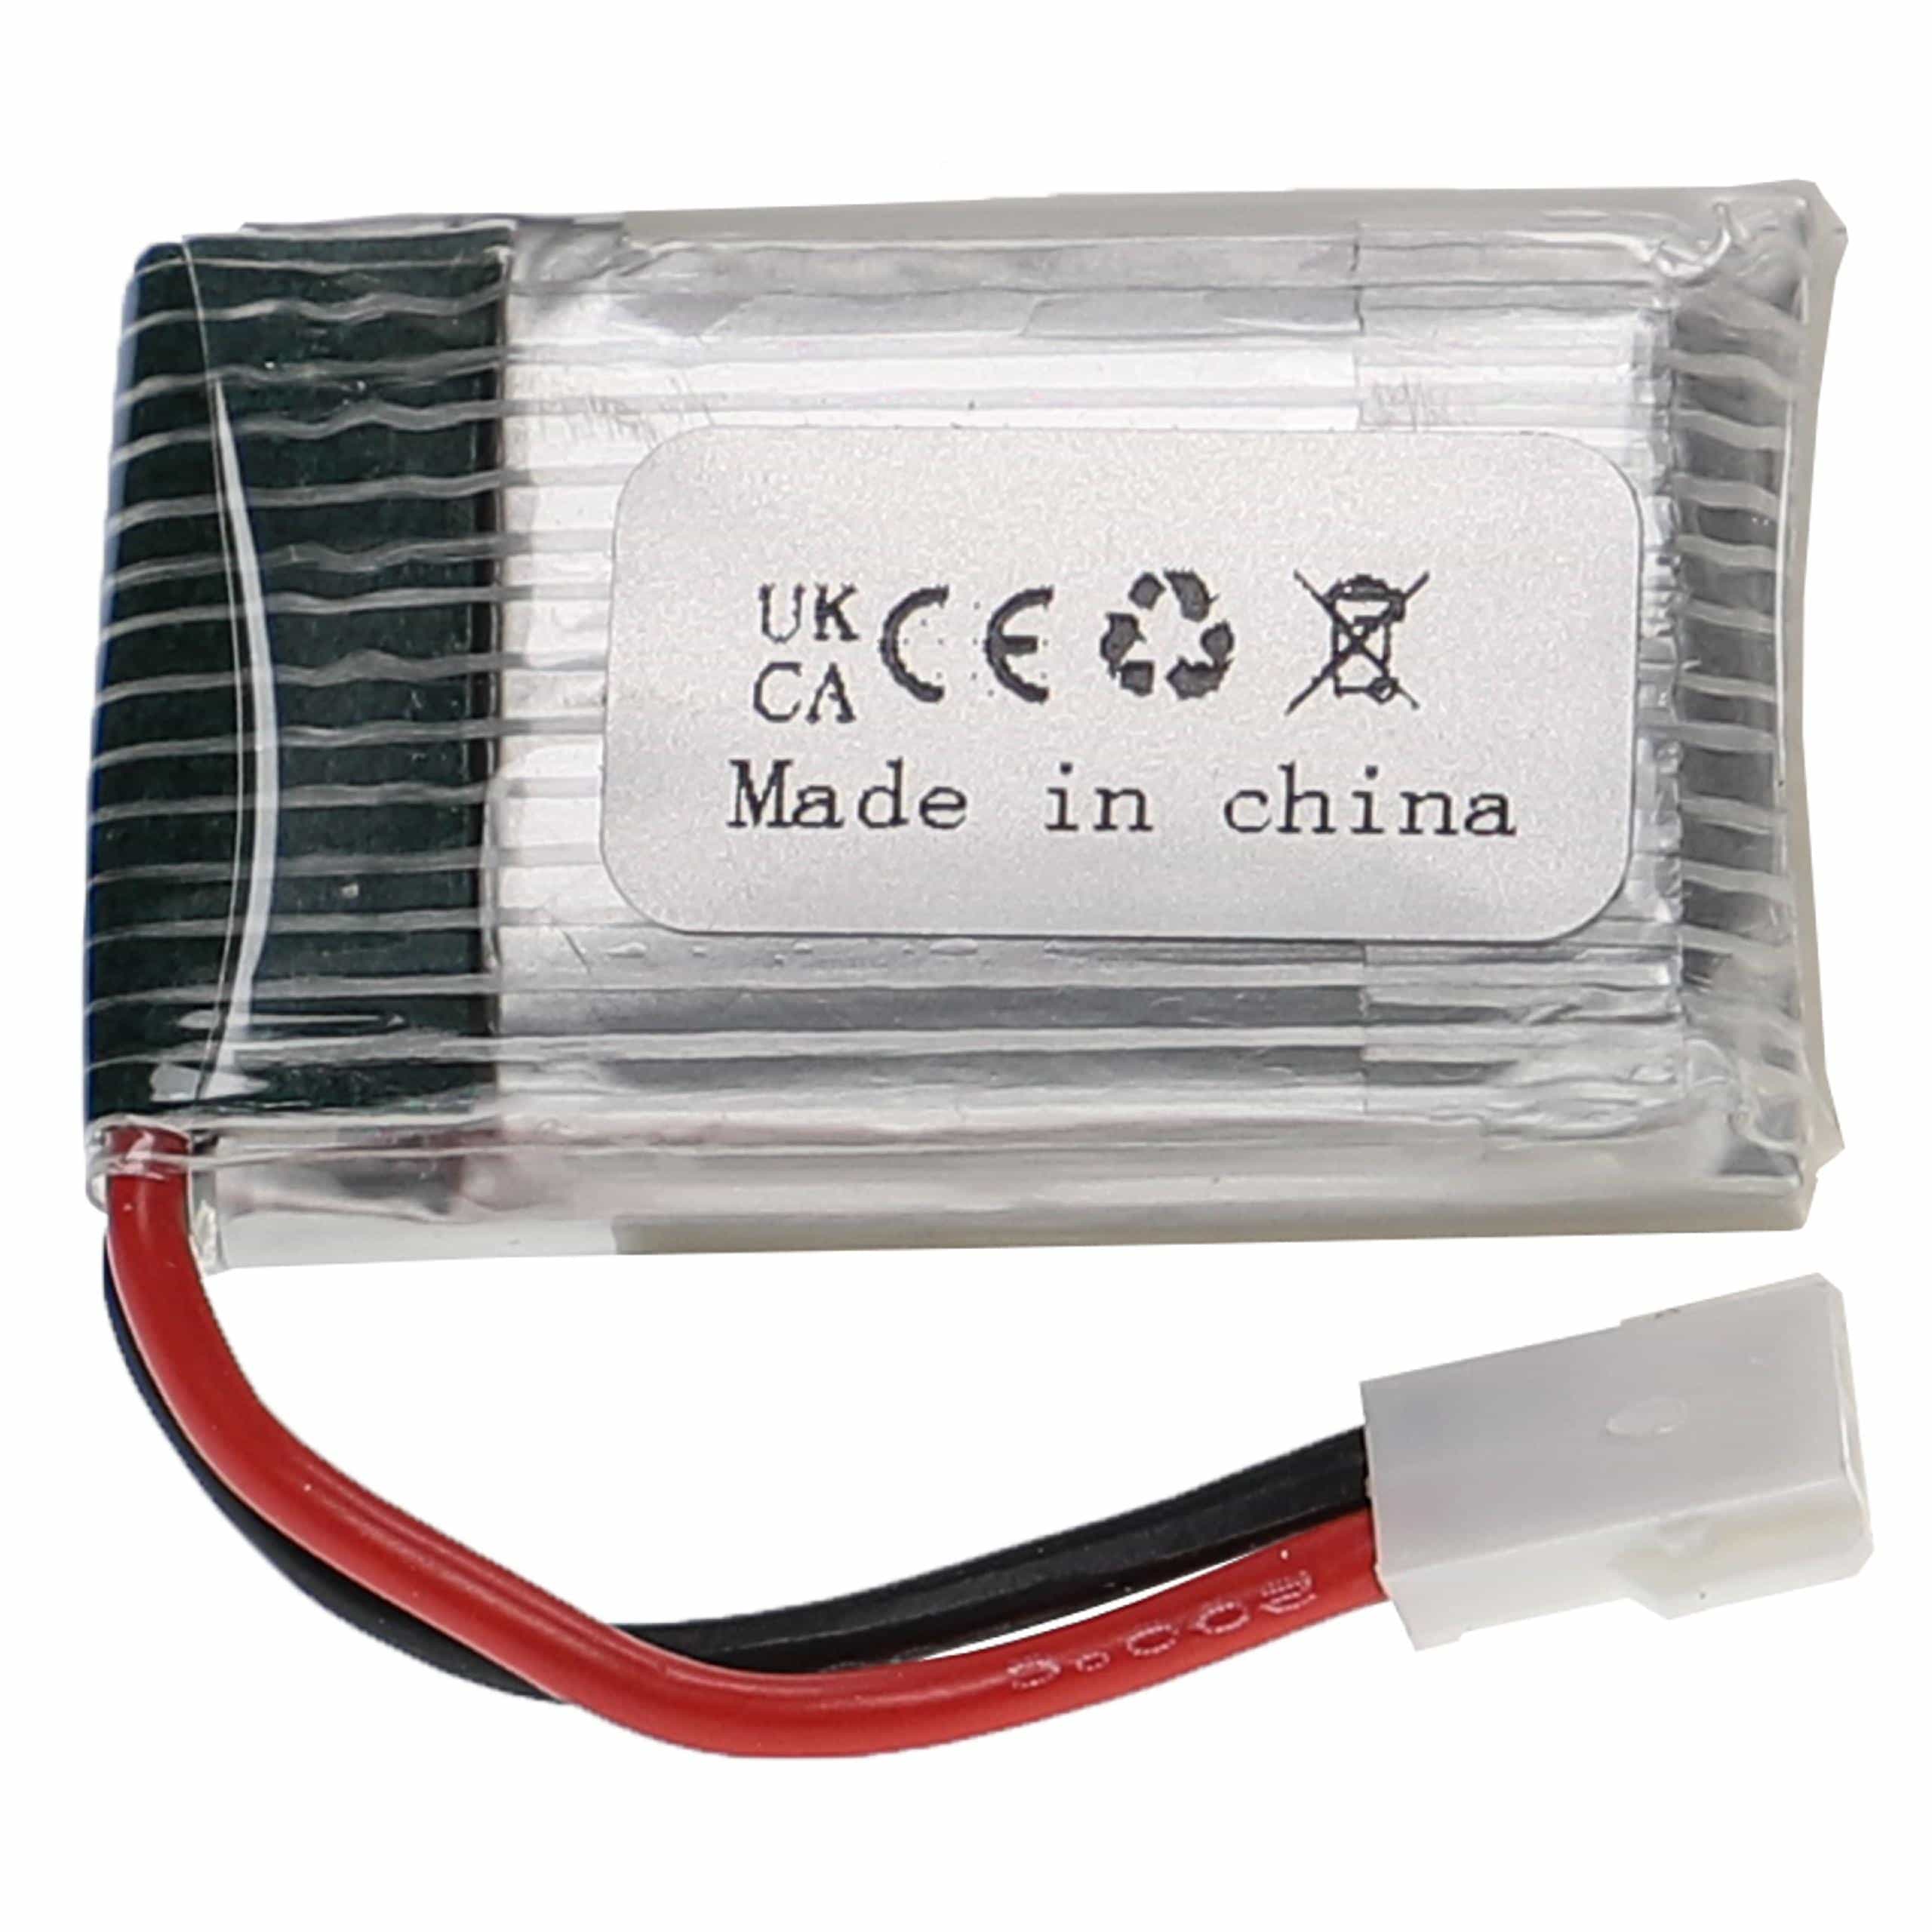 Batería para dispositivos modelismo - 300 mAh 3,7 V Li-poli, XH 2.54 2P